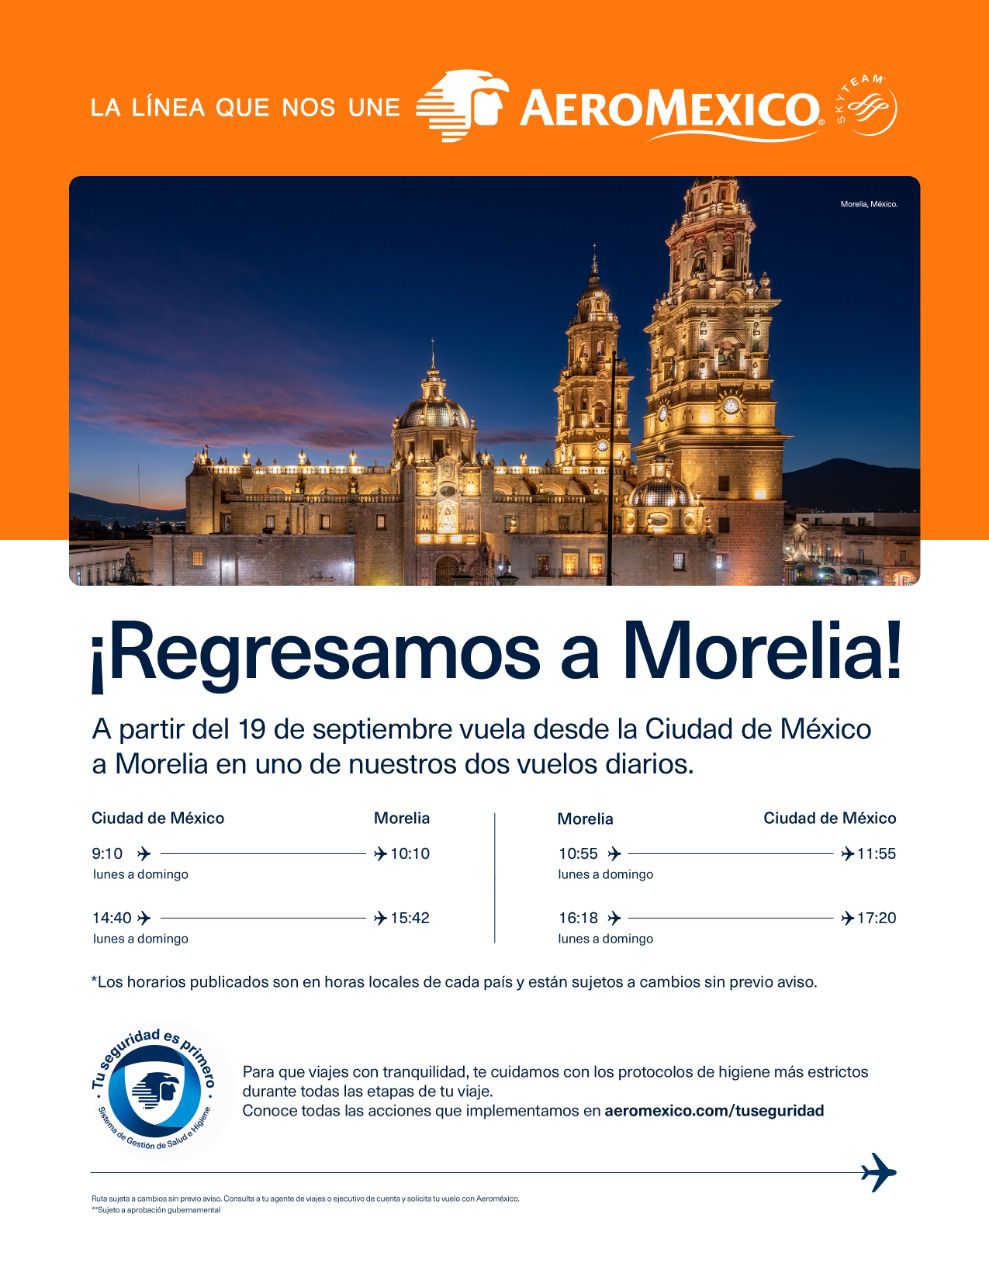 Celebra Alfonso Martínez regreso de vuelos Ciudad de México-Morelia por parte de Aeroméxico